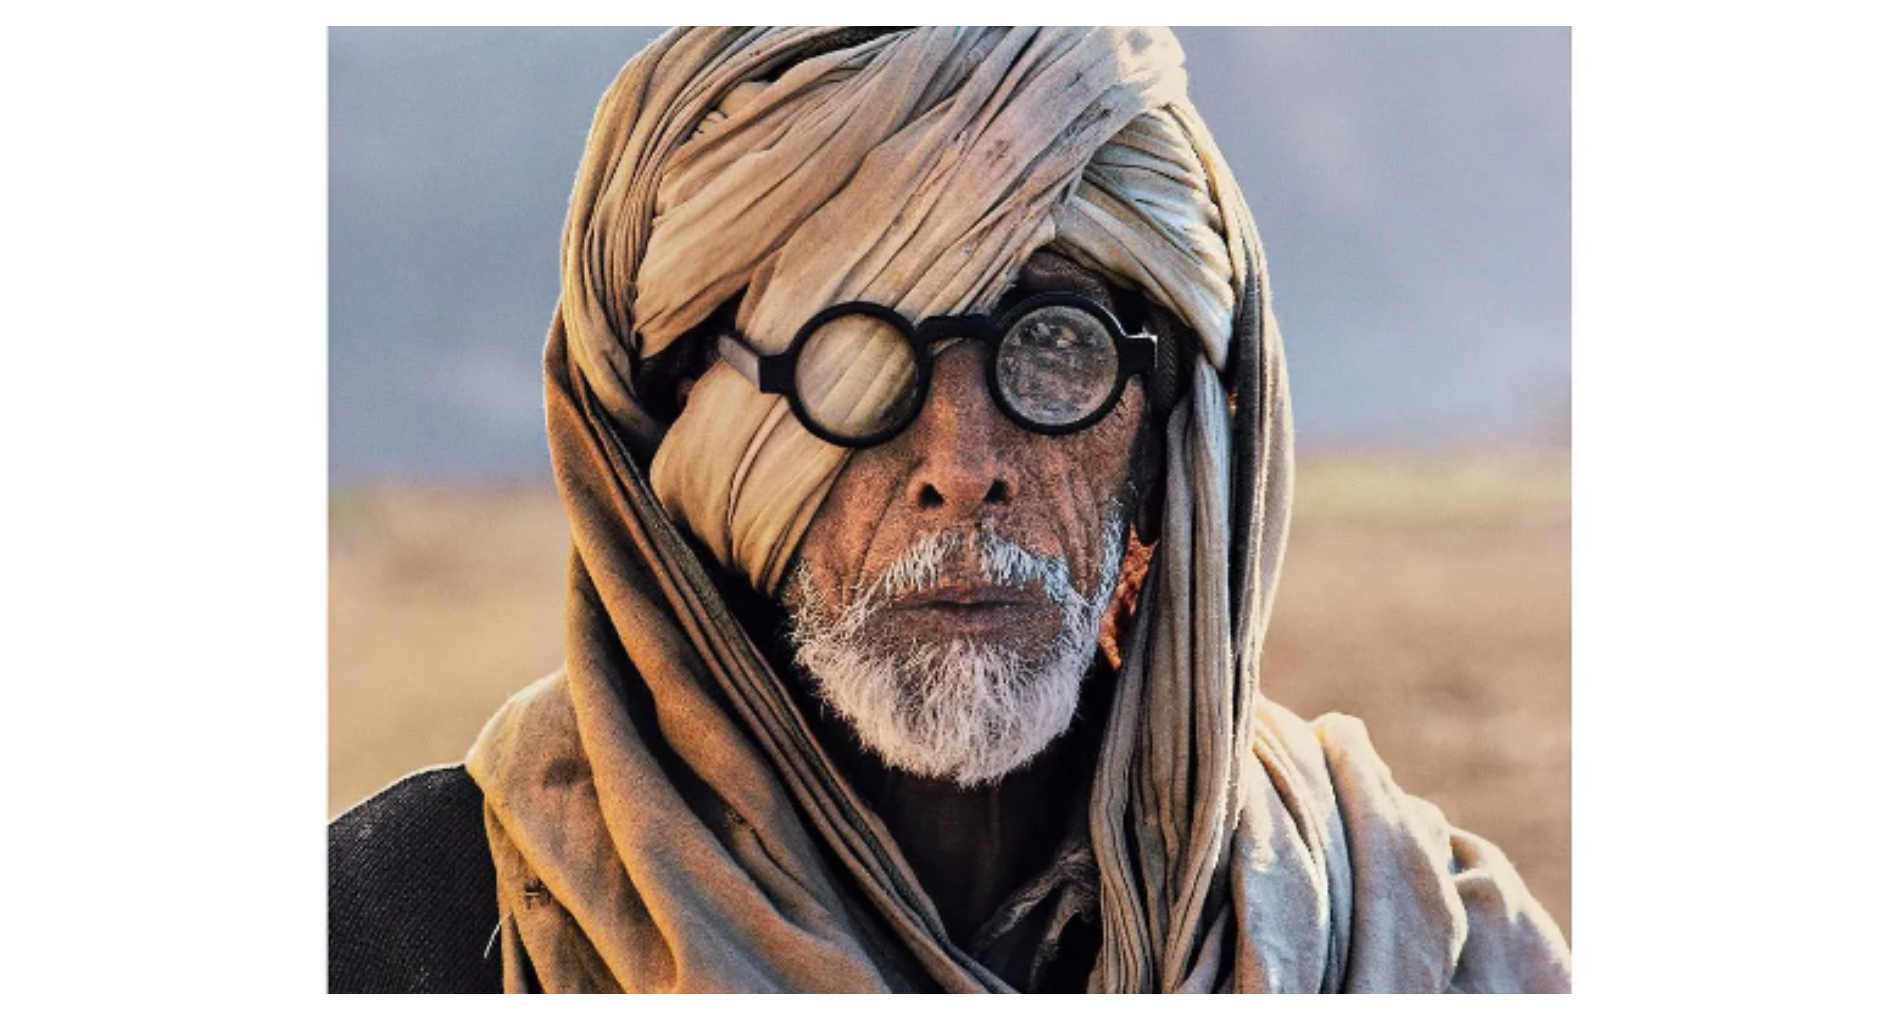 काला चश्मा , सफेद दाढ़ी में रफ लुक में दिखा ये शख्स, यूजर्स समझे Amitabh Bachchan! जानिए कौन हैं?